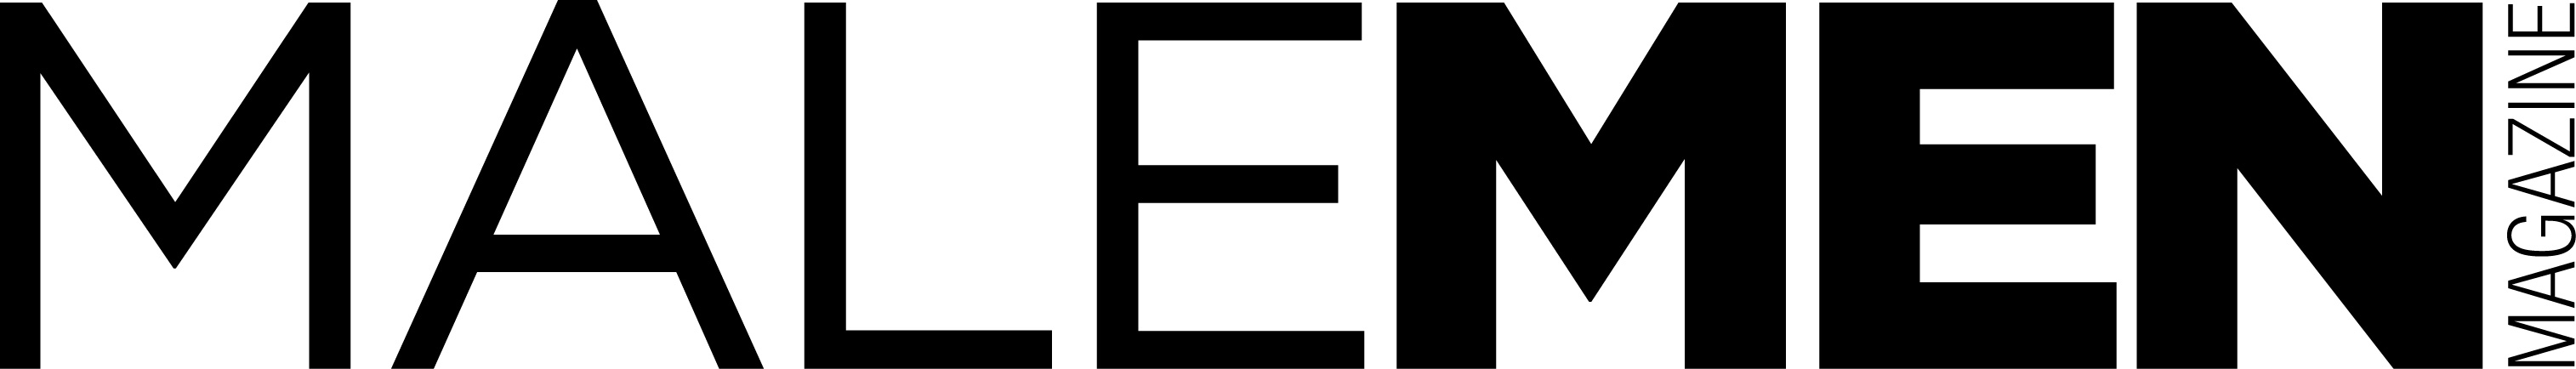 logo_Malemen.jpg